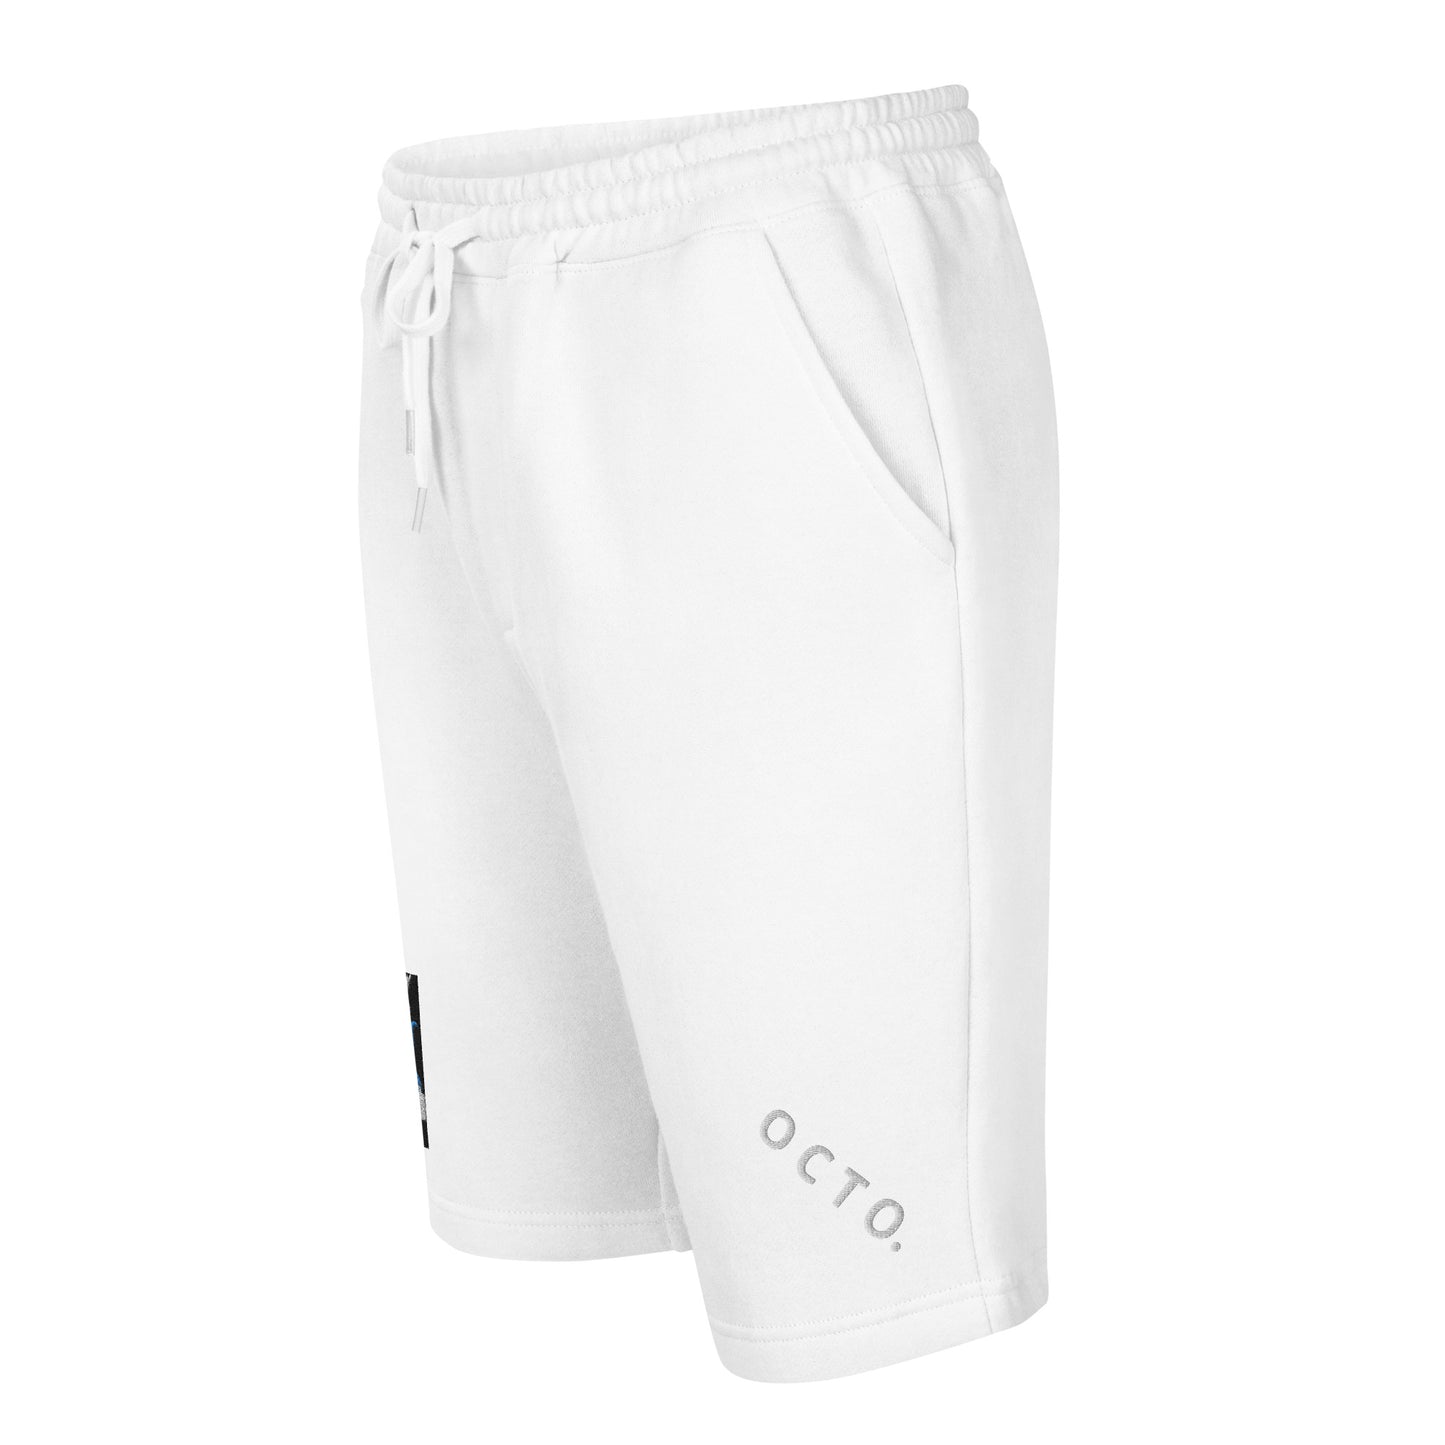 Octo. Mafia "mindset" shorts